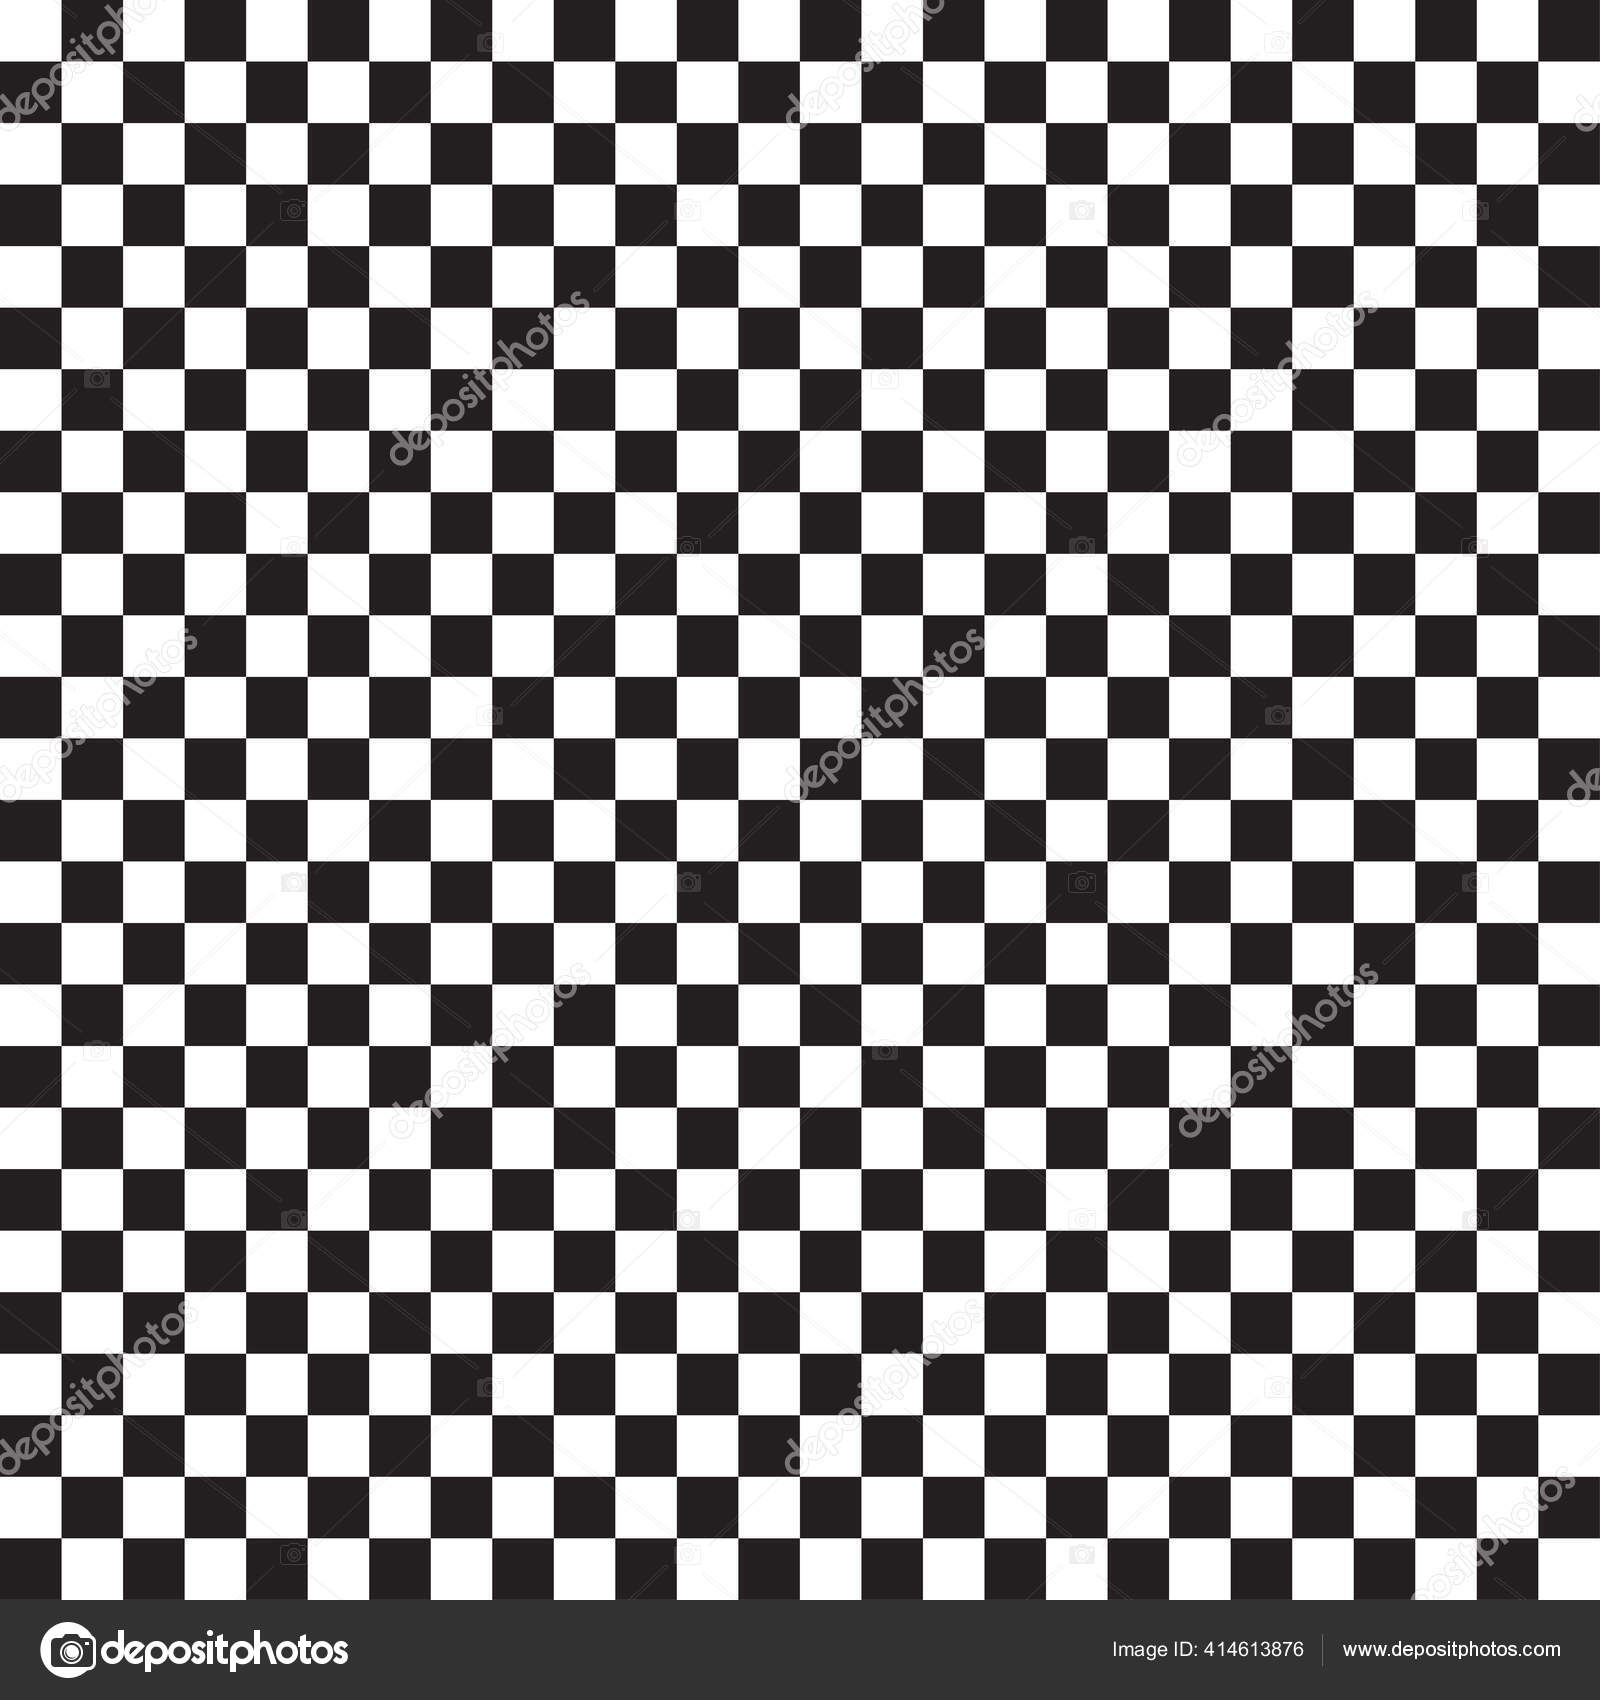 Quadrados preto e branco. fundo de xadrez